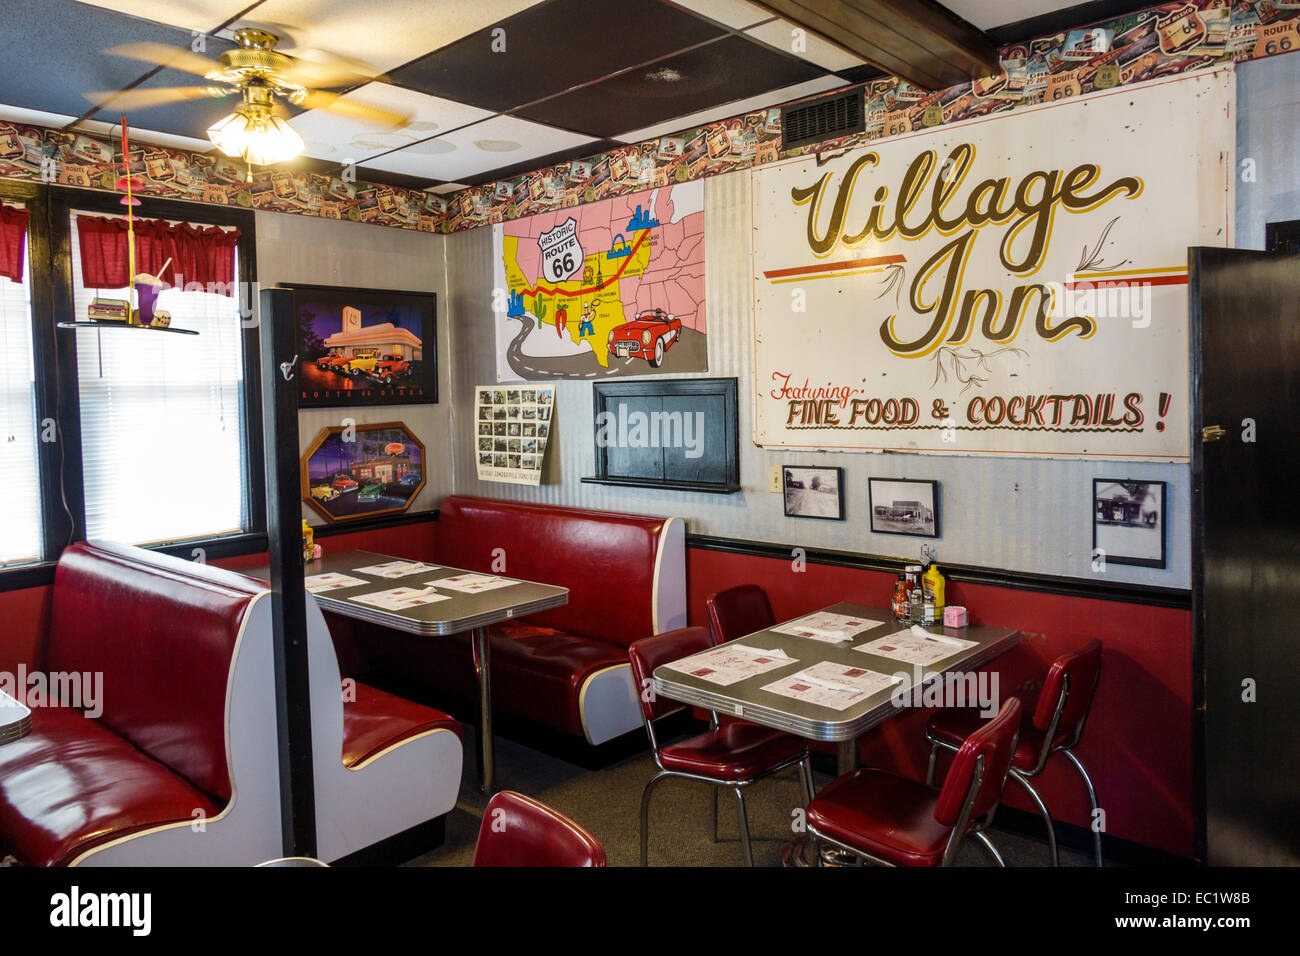 Illinois Hamel, strada storica Route 66, Weezy's, ristorante ristoranti, cibo, caffè, interno, stand, arredamento, americana, IL140902029 Foto Stock